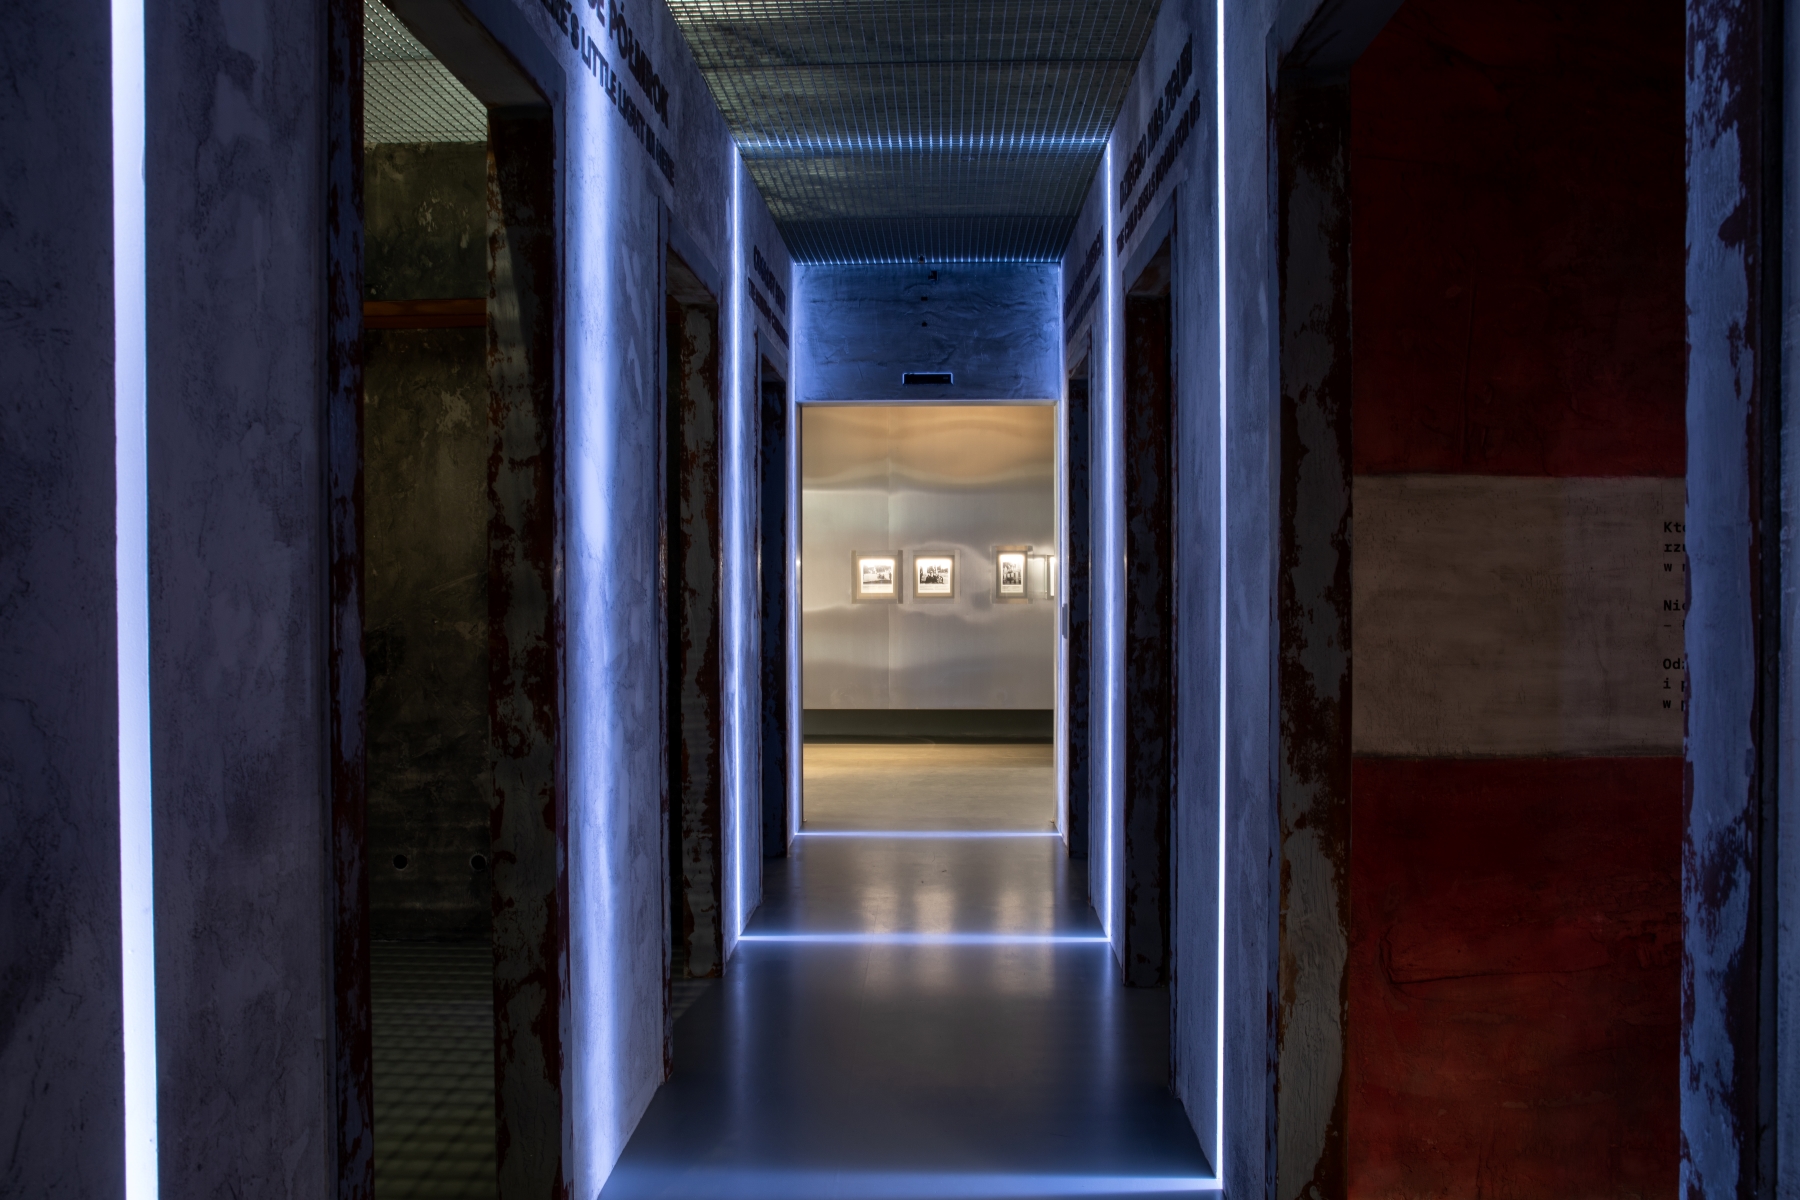 Ciemne przestrzenie na wystawie "Wokół nas morze ognia" - podświetlone jedynie krawędzie ścian w korytarzu.